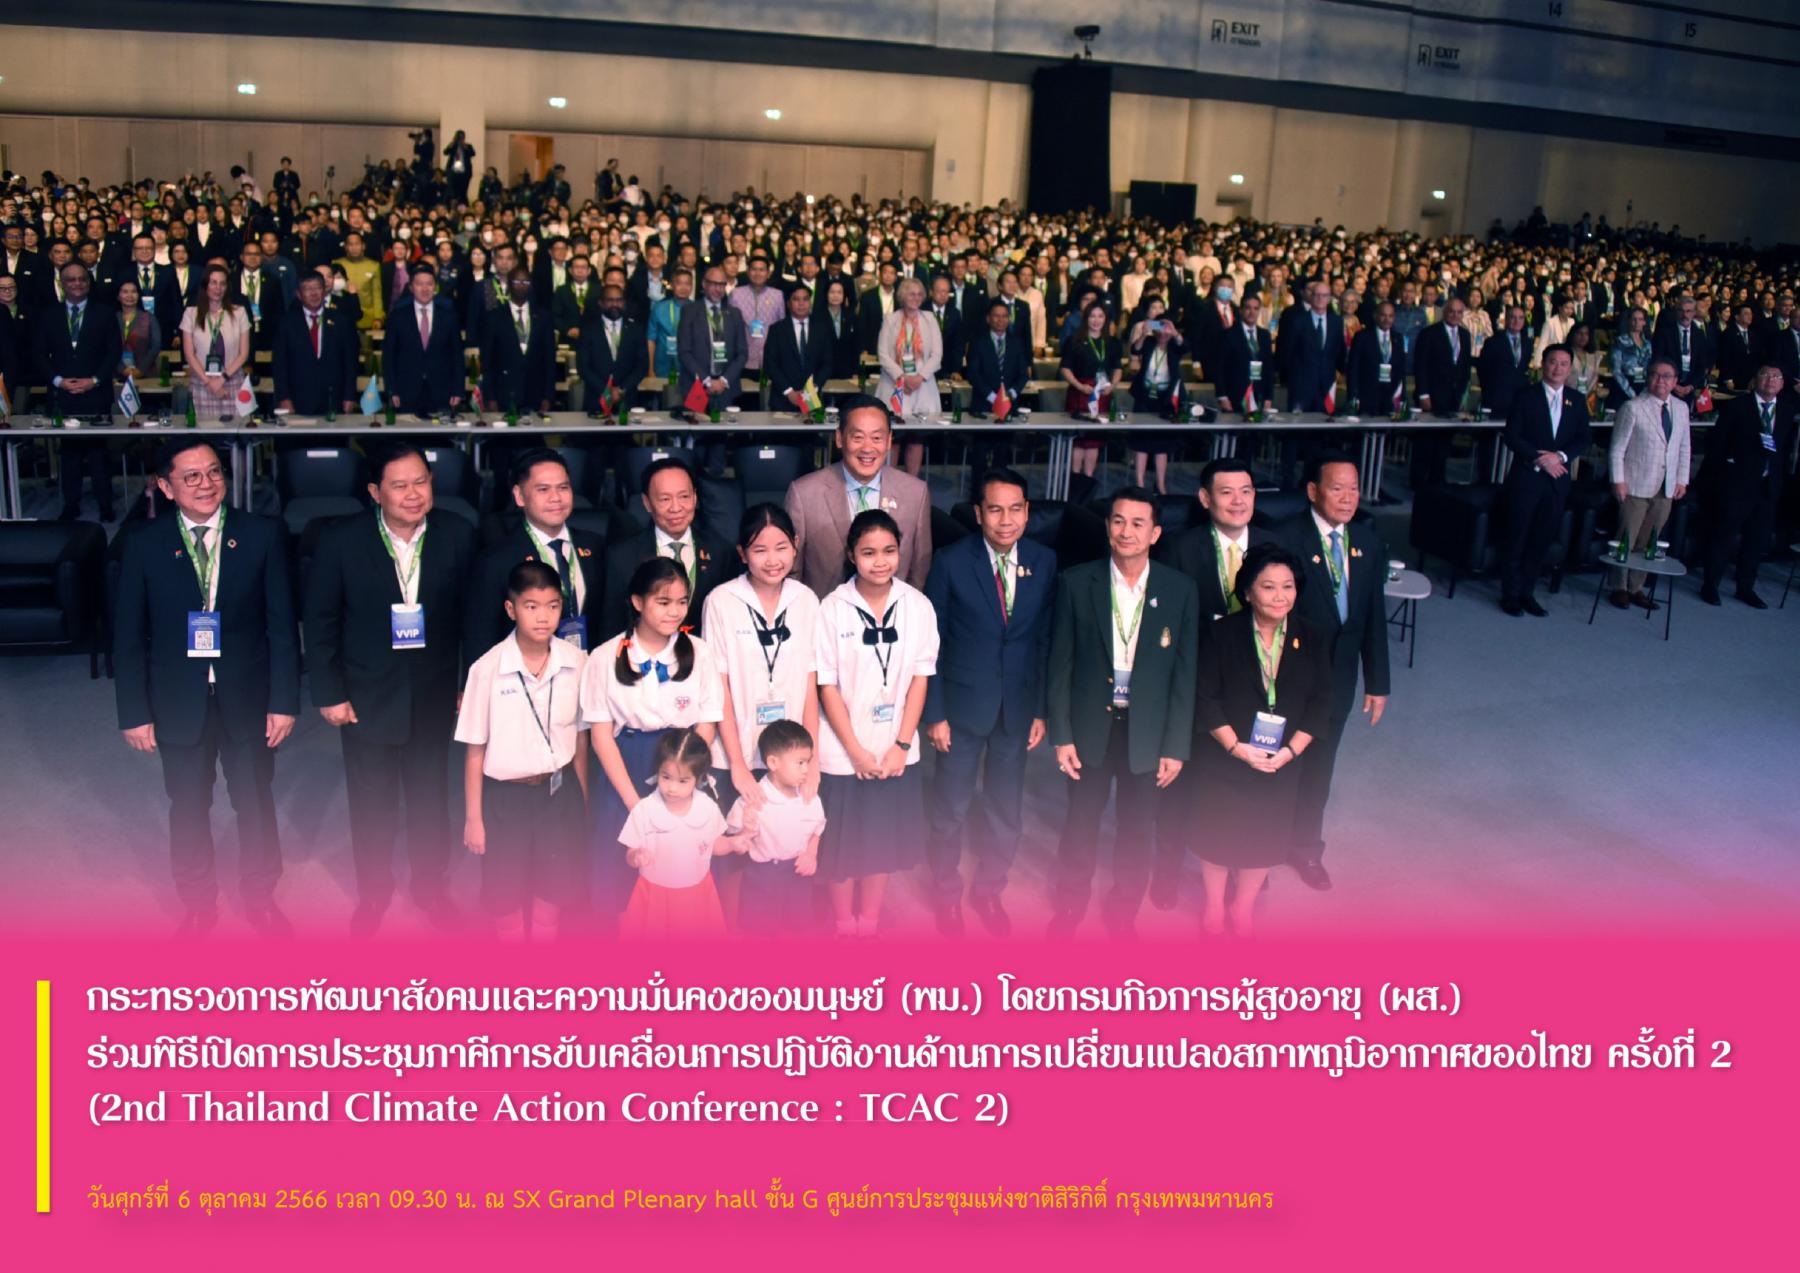  พม. โดยกรมกิจการผู้สูงอายุ (ผส.) ร่วมพิธีเปิดการประชุมภาคีการขับเคลื่อนการปฏิบัติงานด้านการเปลี่ยนแปลงสภาพภูมิอากาศของไทย ครั้งที่ 2 (2nd Thailand Climate Action Conference : TCAC 2)